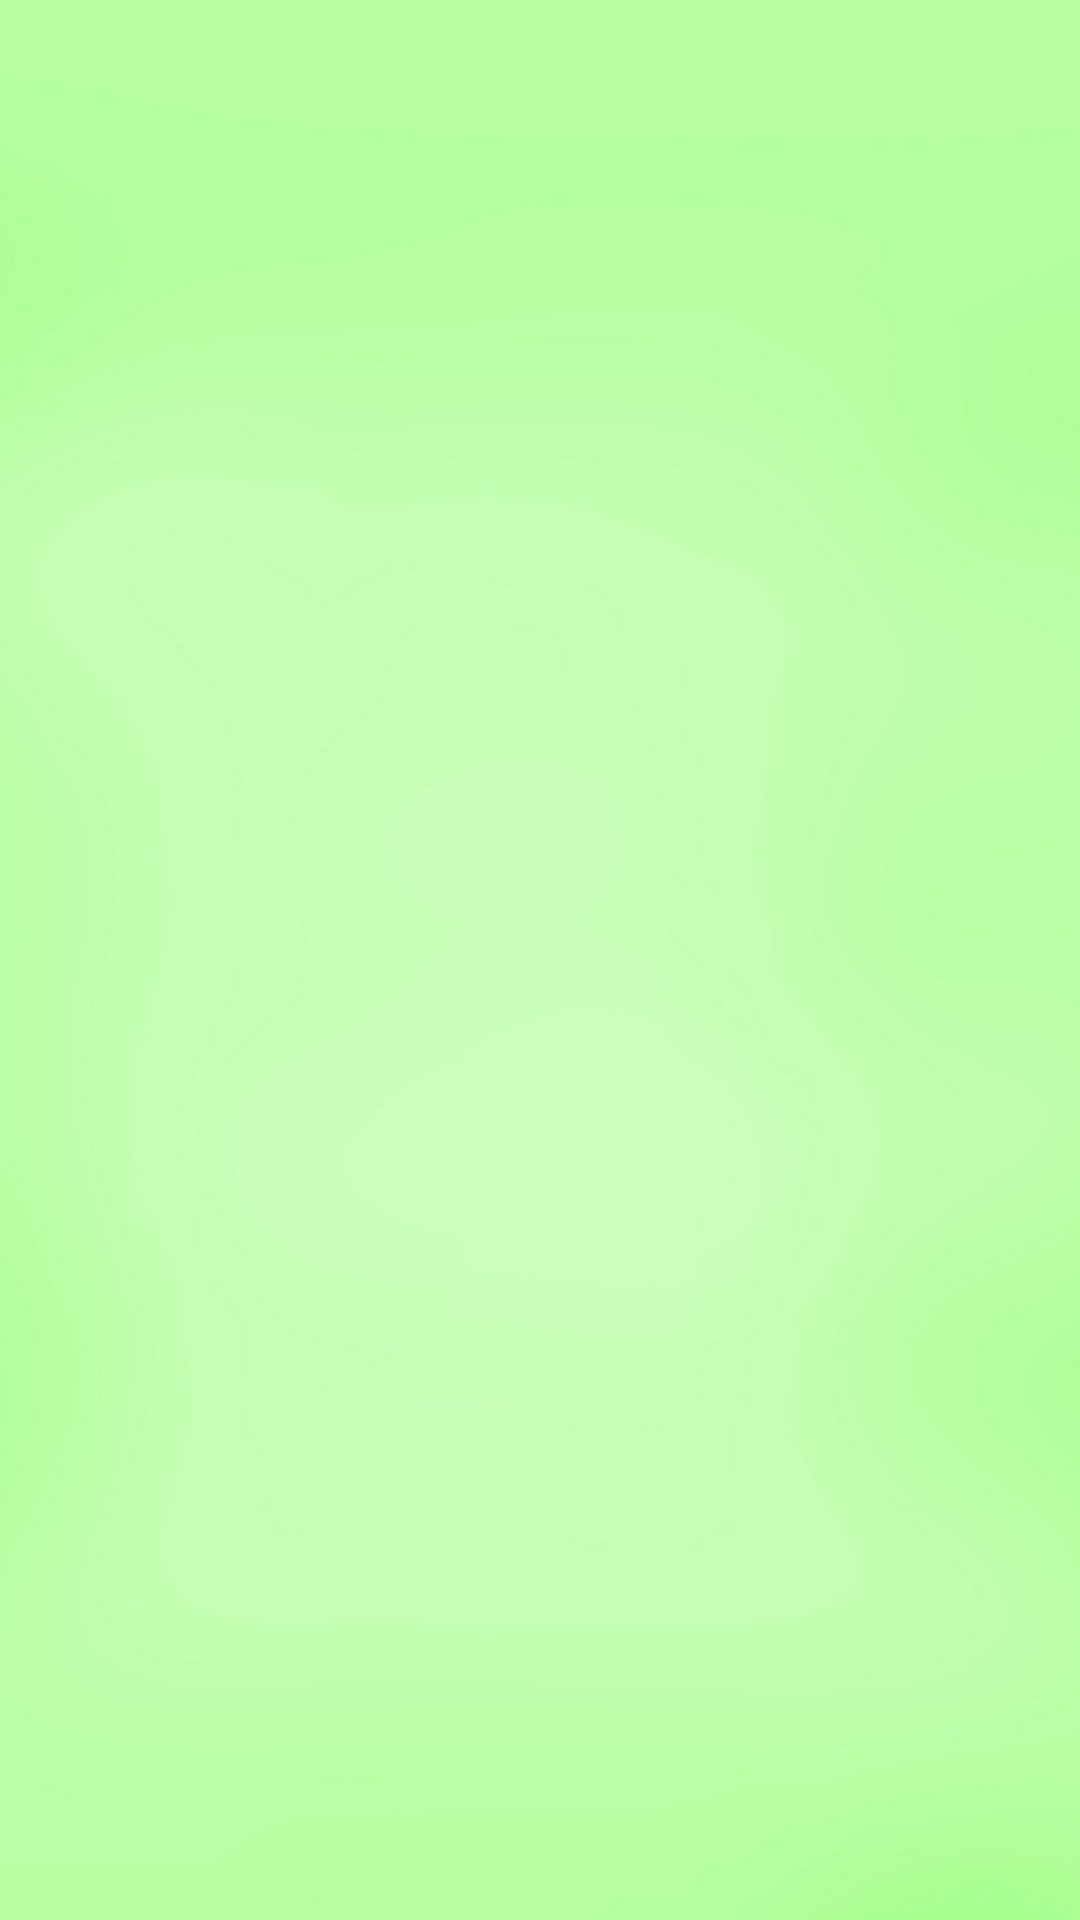 薄緑色の壁紙,緑,黄,アクア,ターコイズ,草